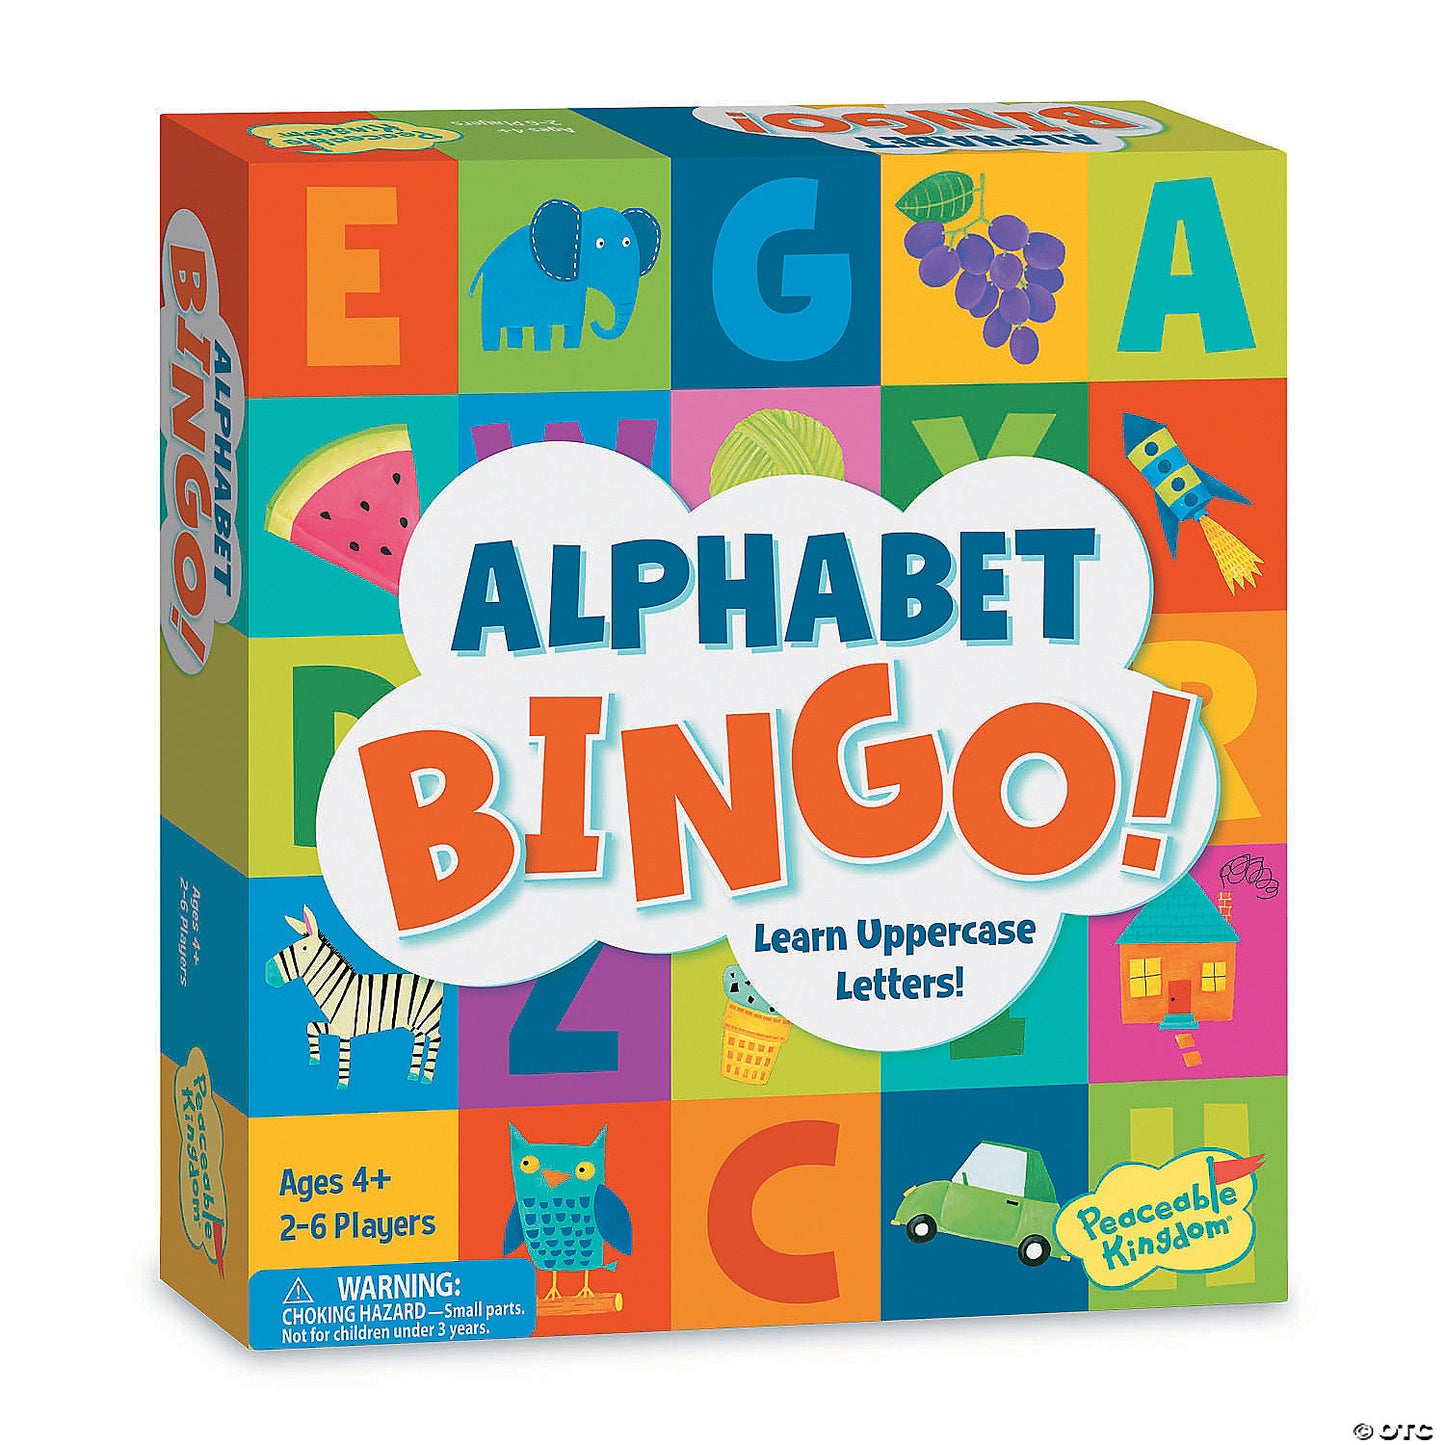 Alphabet Bingo!